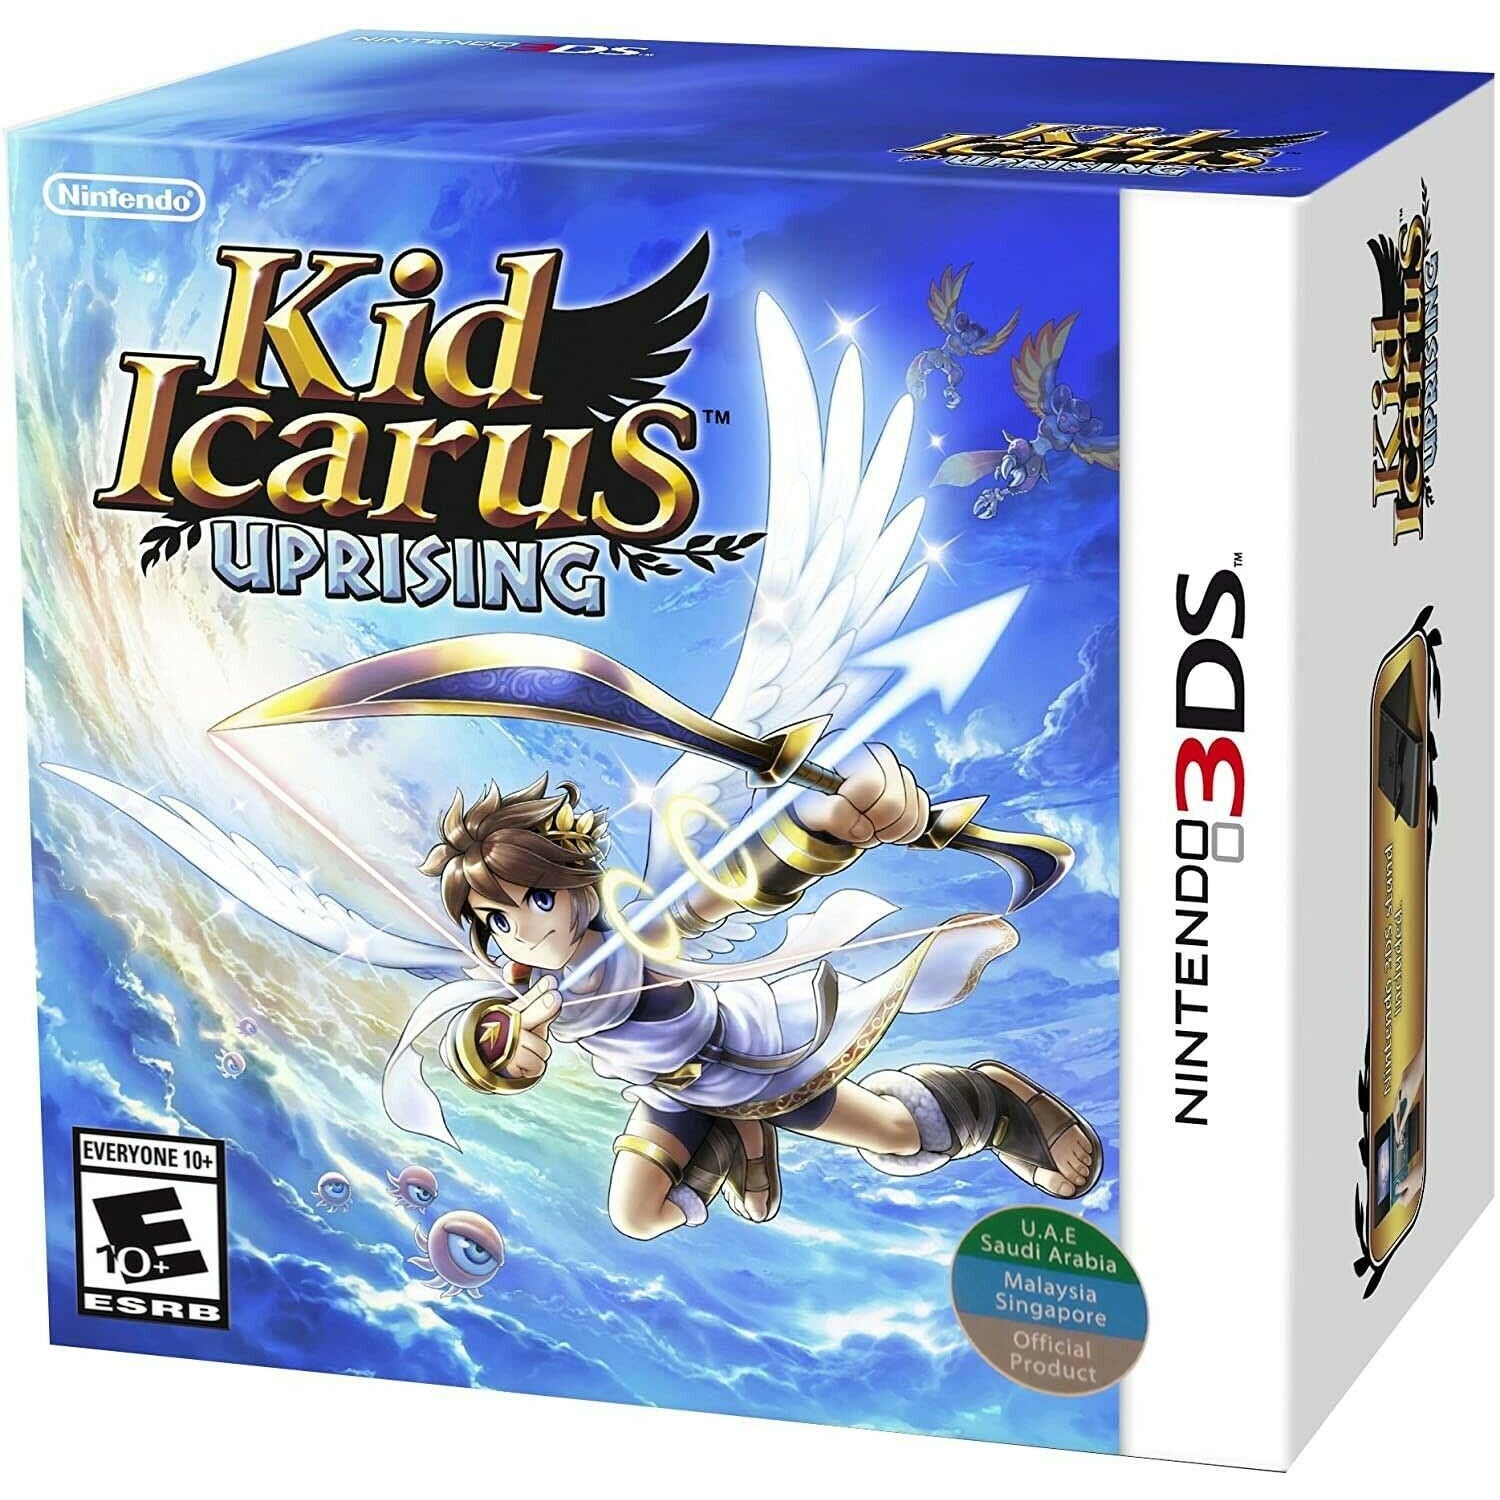 3DS - Pack support pour l'insurrection de Kid Icarus